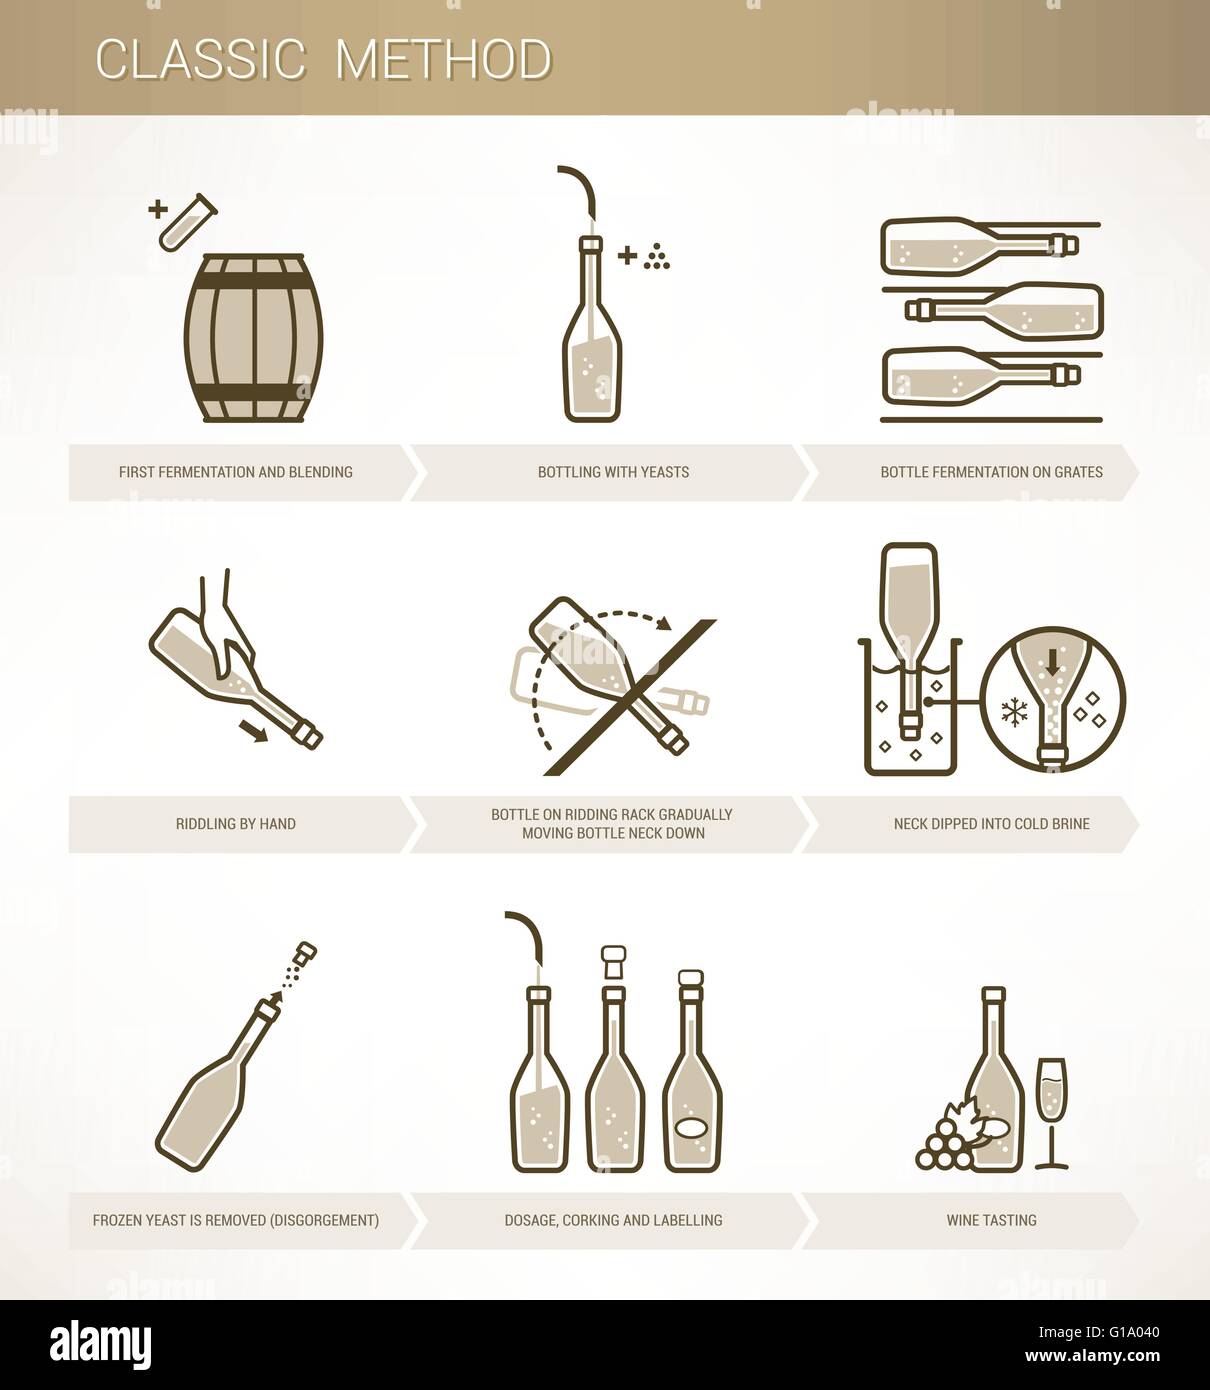 Vinificazione metodo classico procedimento di fermentazione del vino e di imbottigliamento Illustrazione Vettoriale